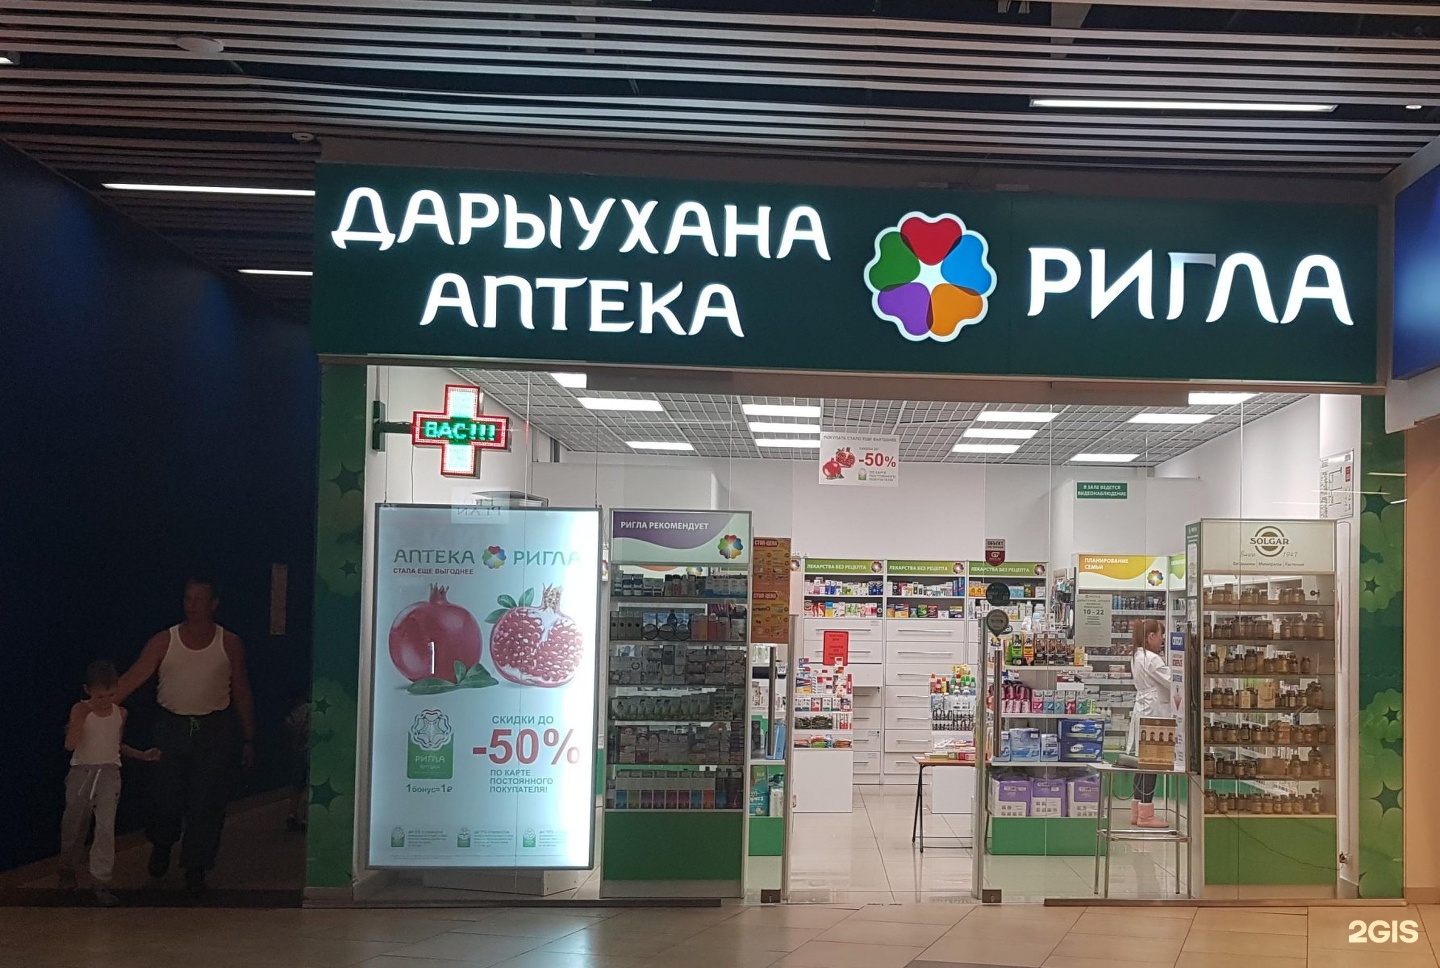 Аптека Ригла Контакты Москва Телефон